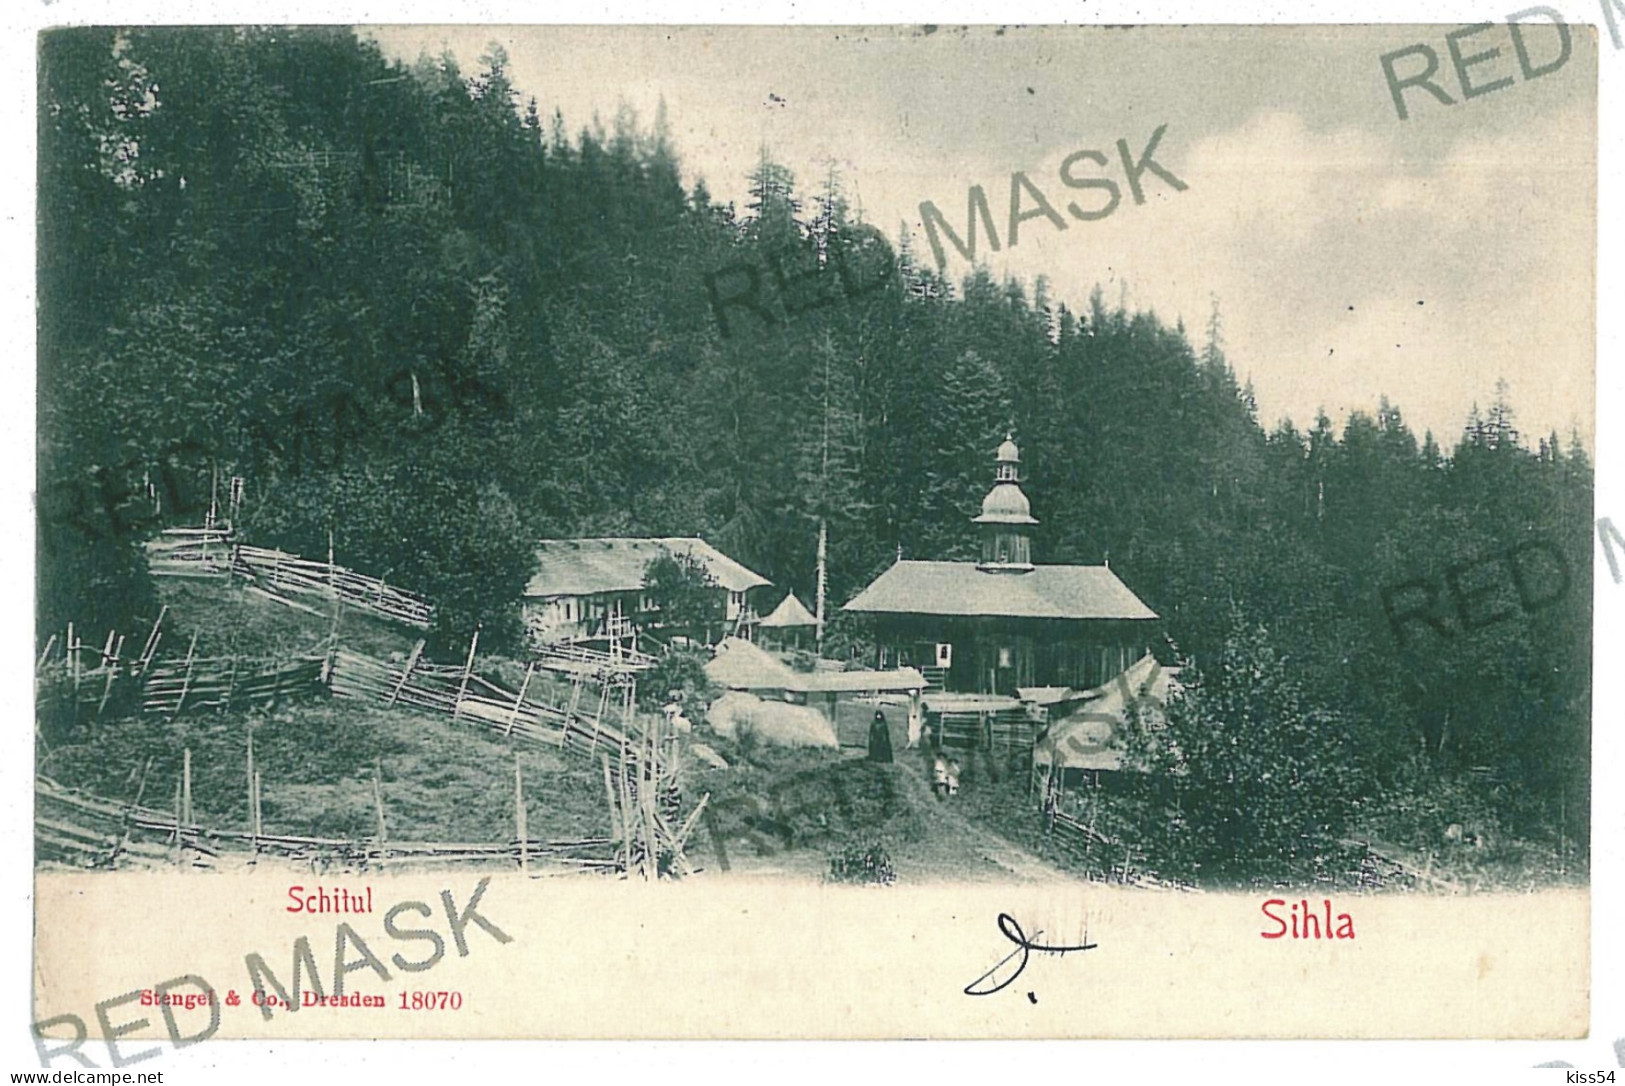 RO 40 - 11748 Schitul SIHLA, Neamt, Romania - Old Postcard - Used - 1906 - Roemenië